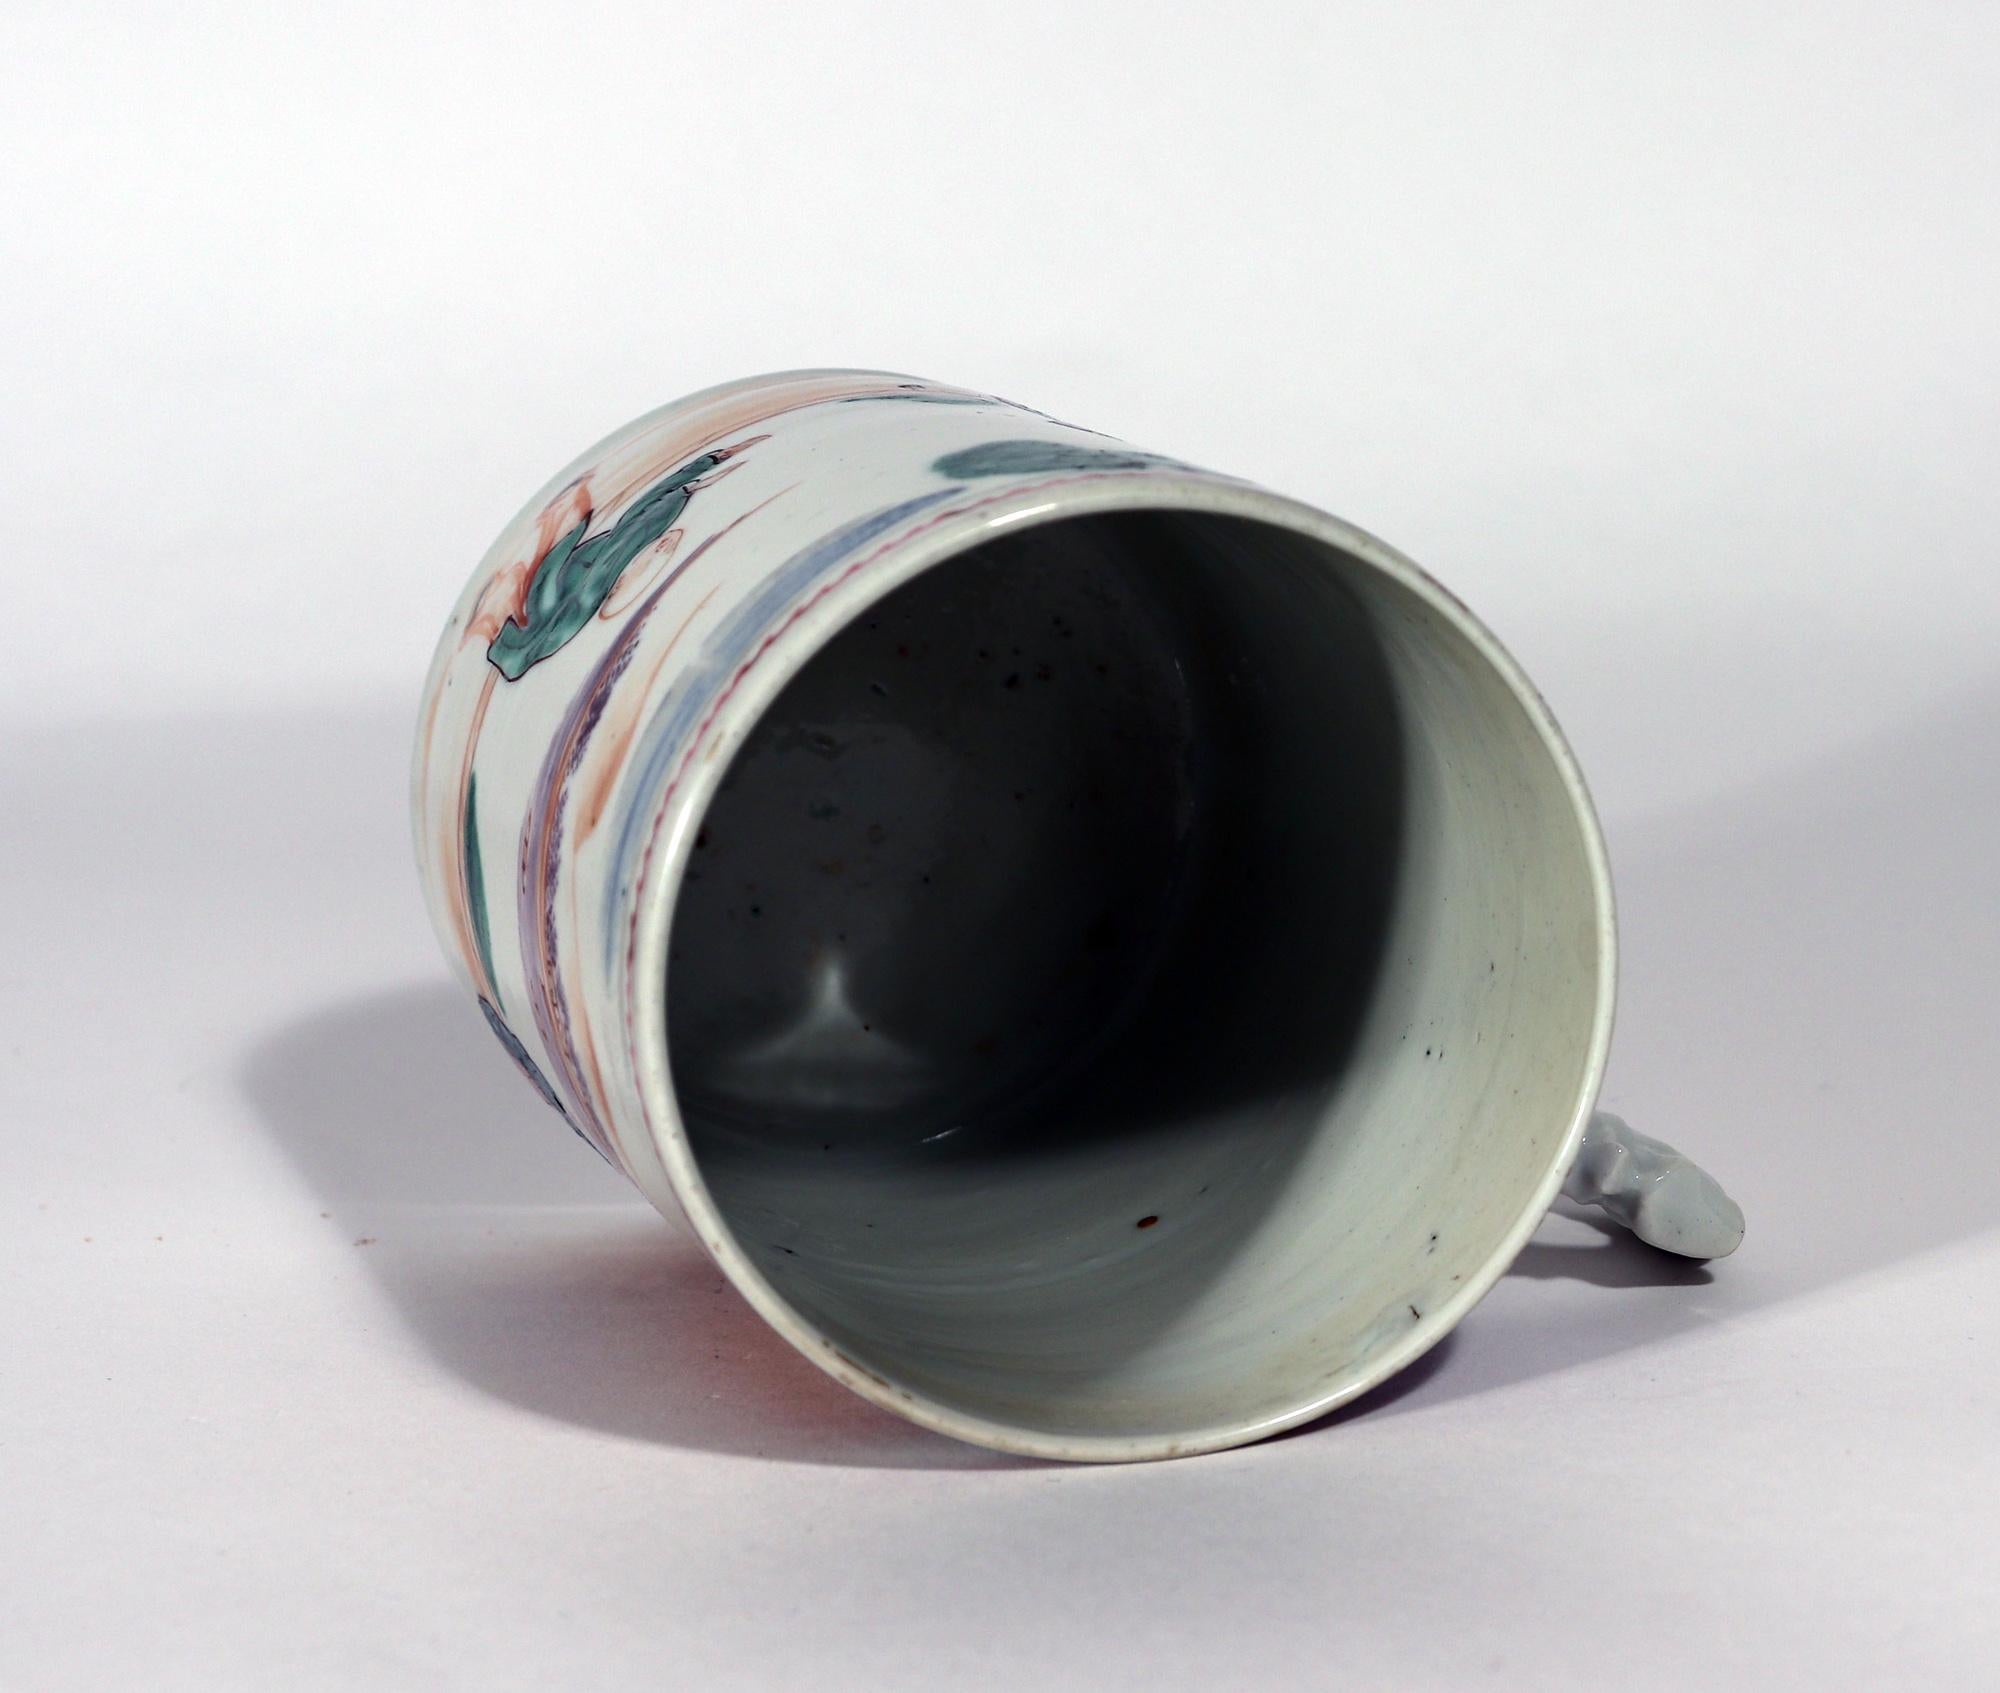 Chinese Export Porcelain Mandarin Pattern Dragon Handled Mug or Tankard 3